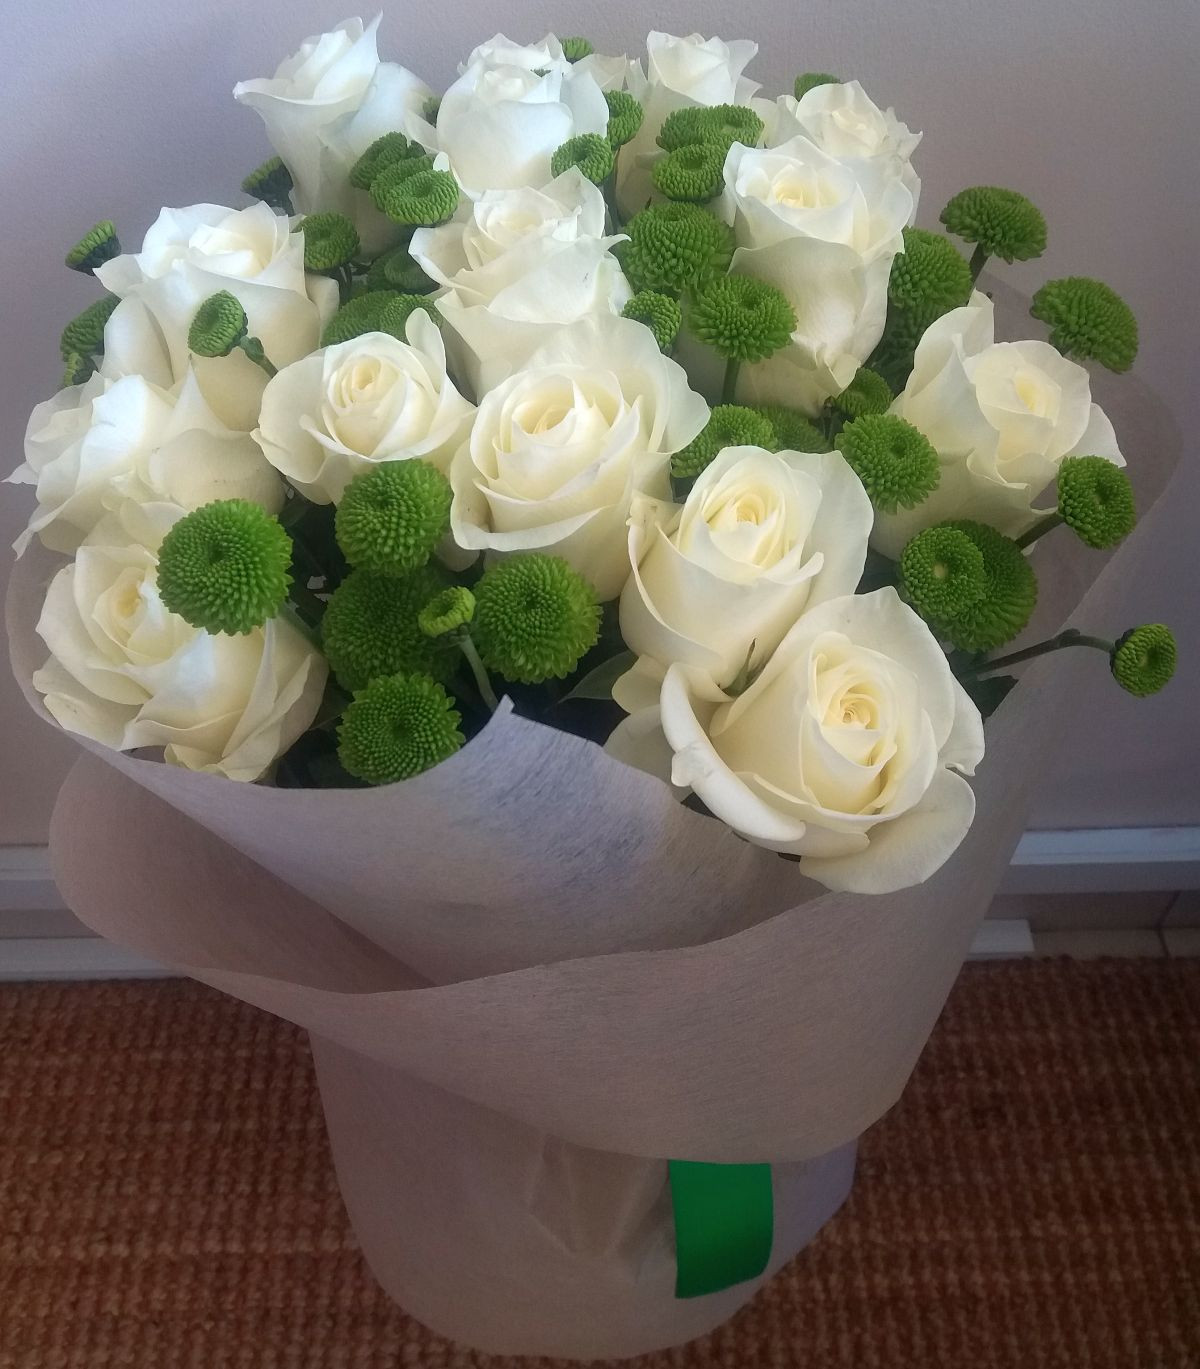 Фото реальных букетов цветов дома. Букет белых роз. Букет из белых роз. Красивый белый букет. Реальные букеты цветов.